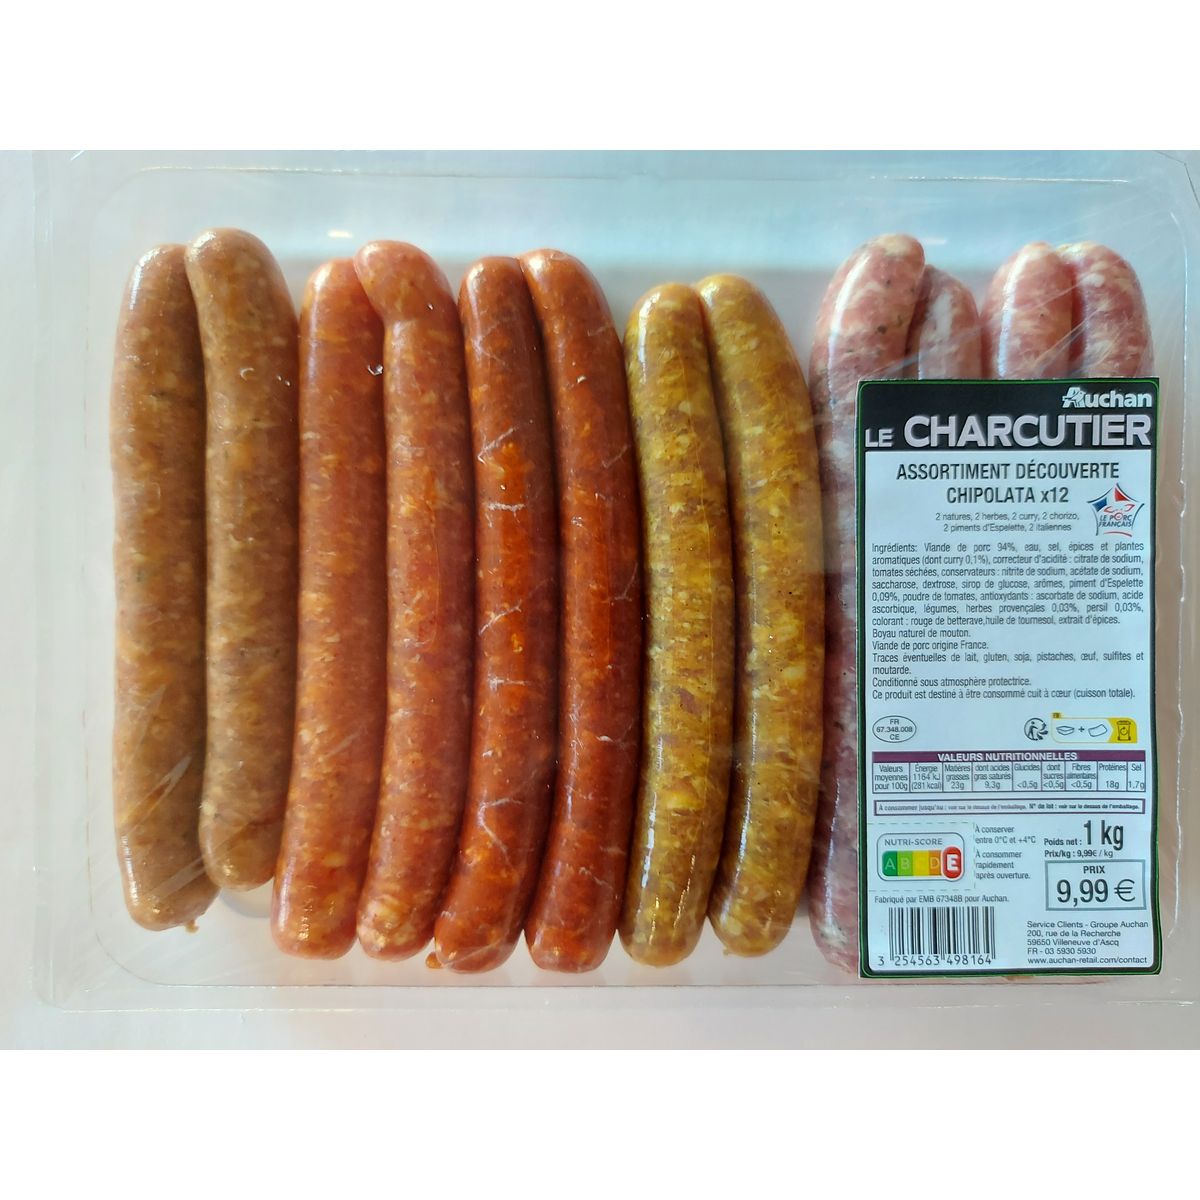 AUCHAN LE CHARCUTIER Assortiment découverte chipolata de porc 12 pièces 1kg